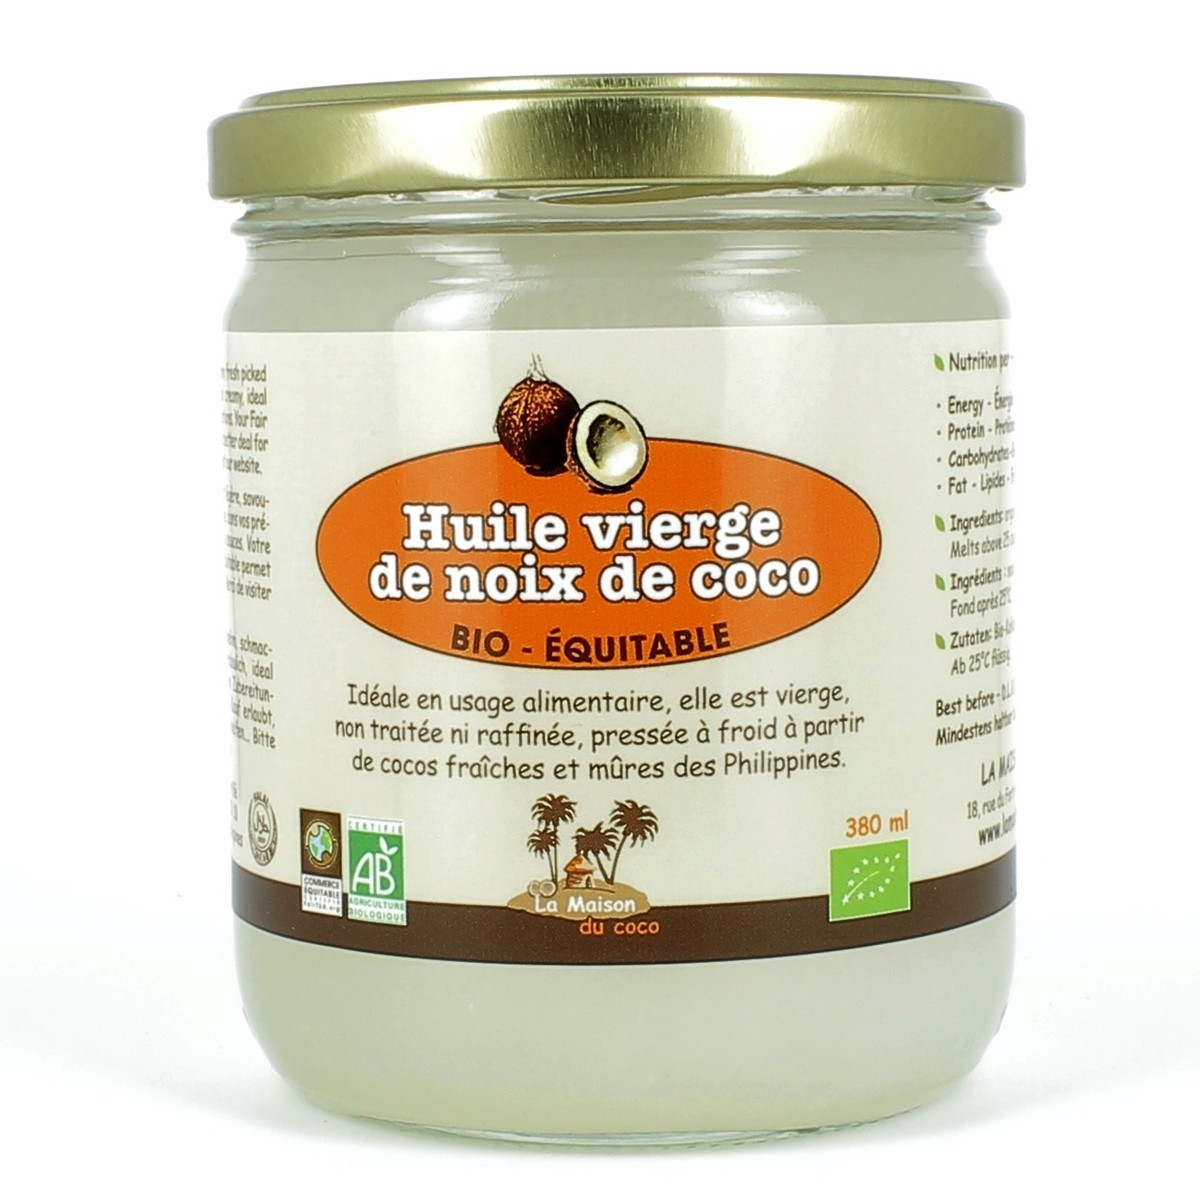 Huile vierge de coco bio équitable 1 litre